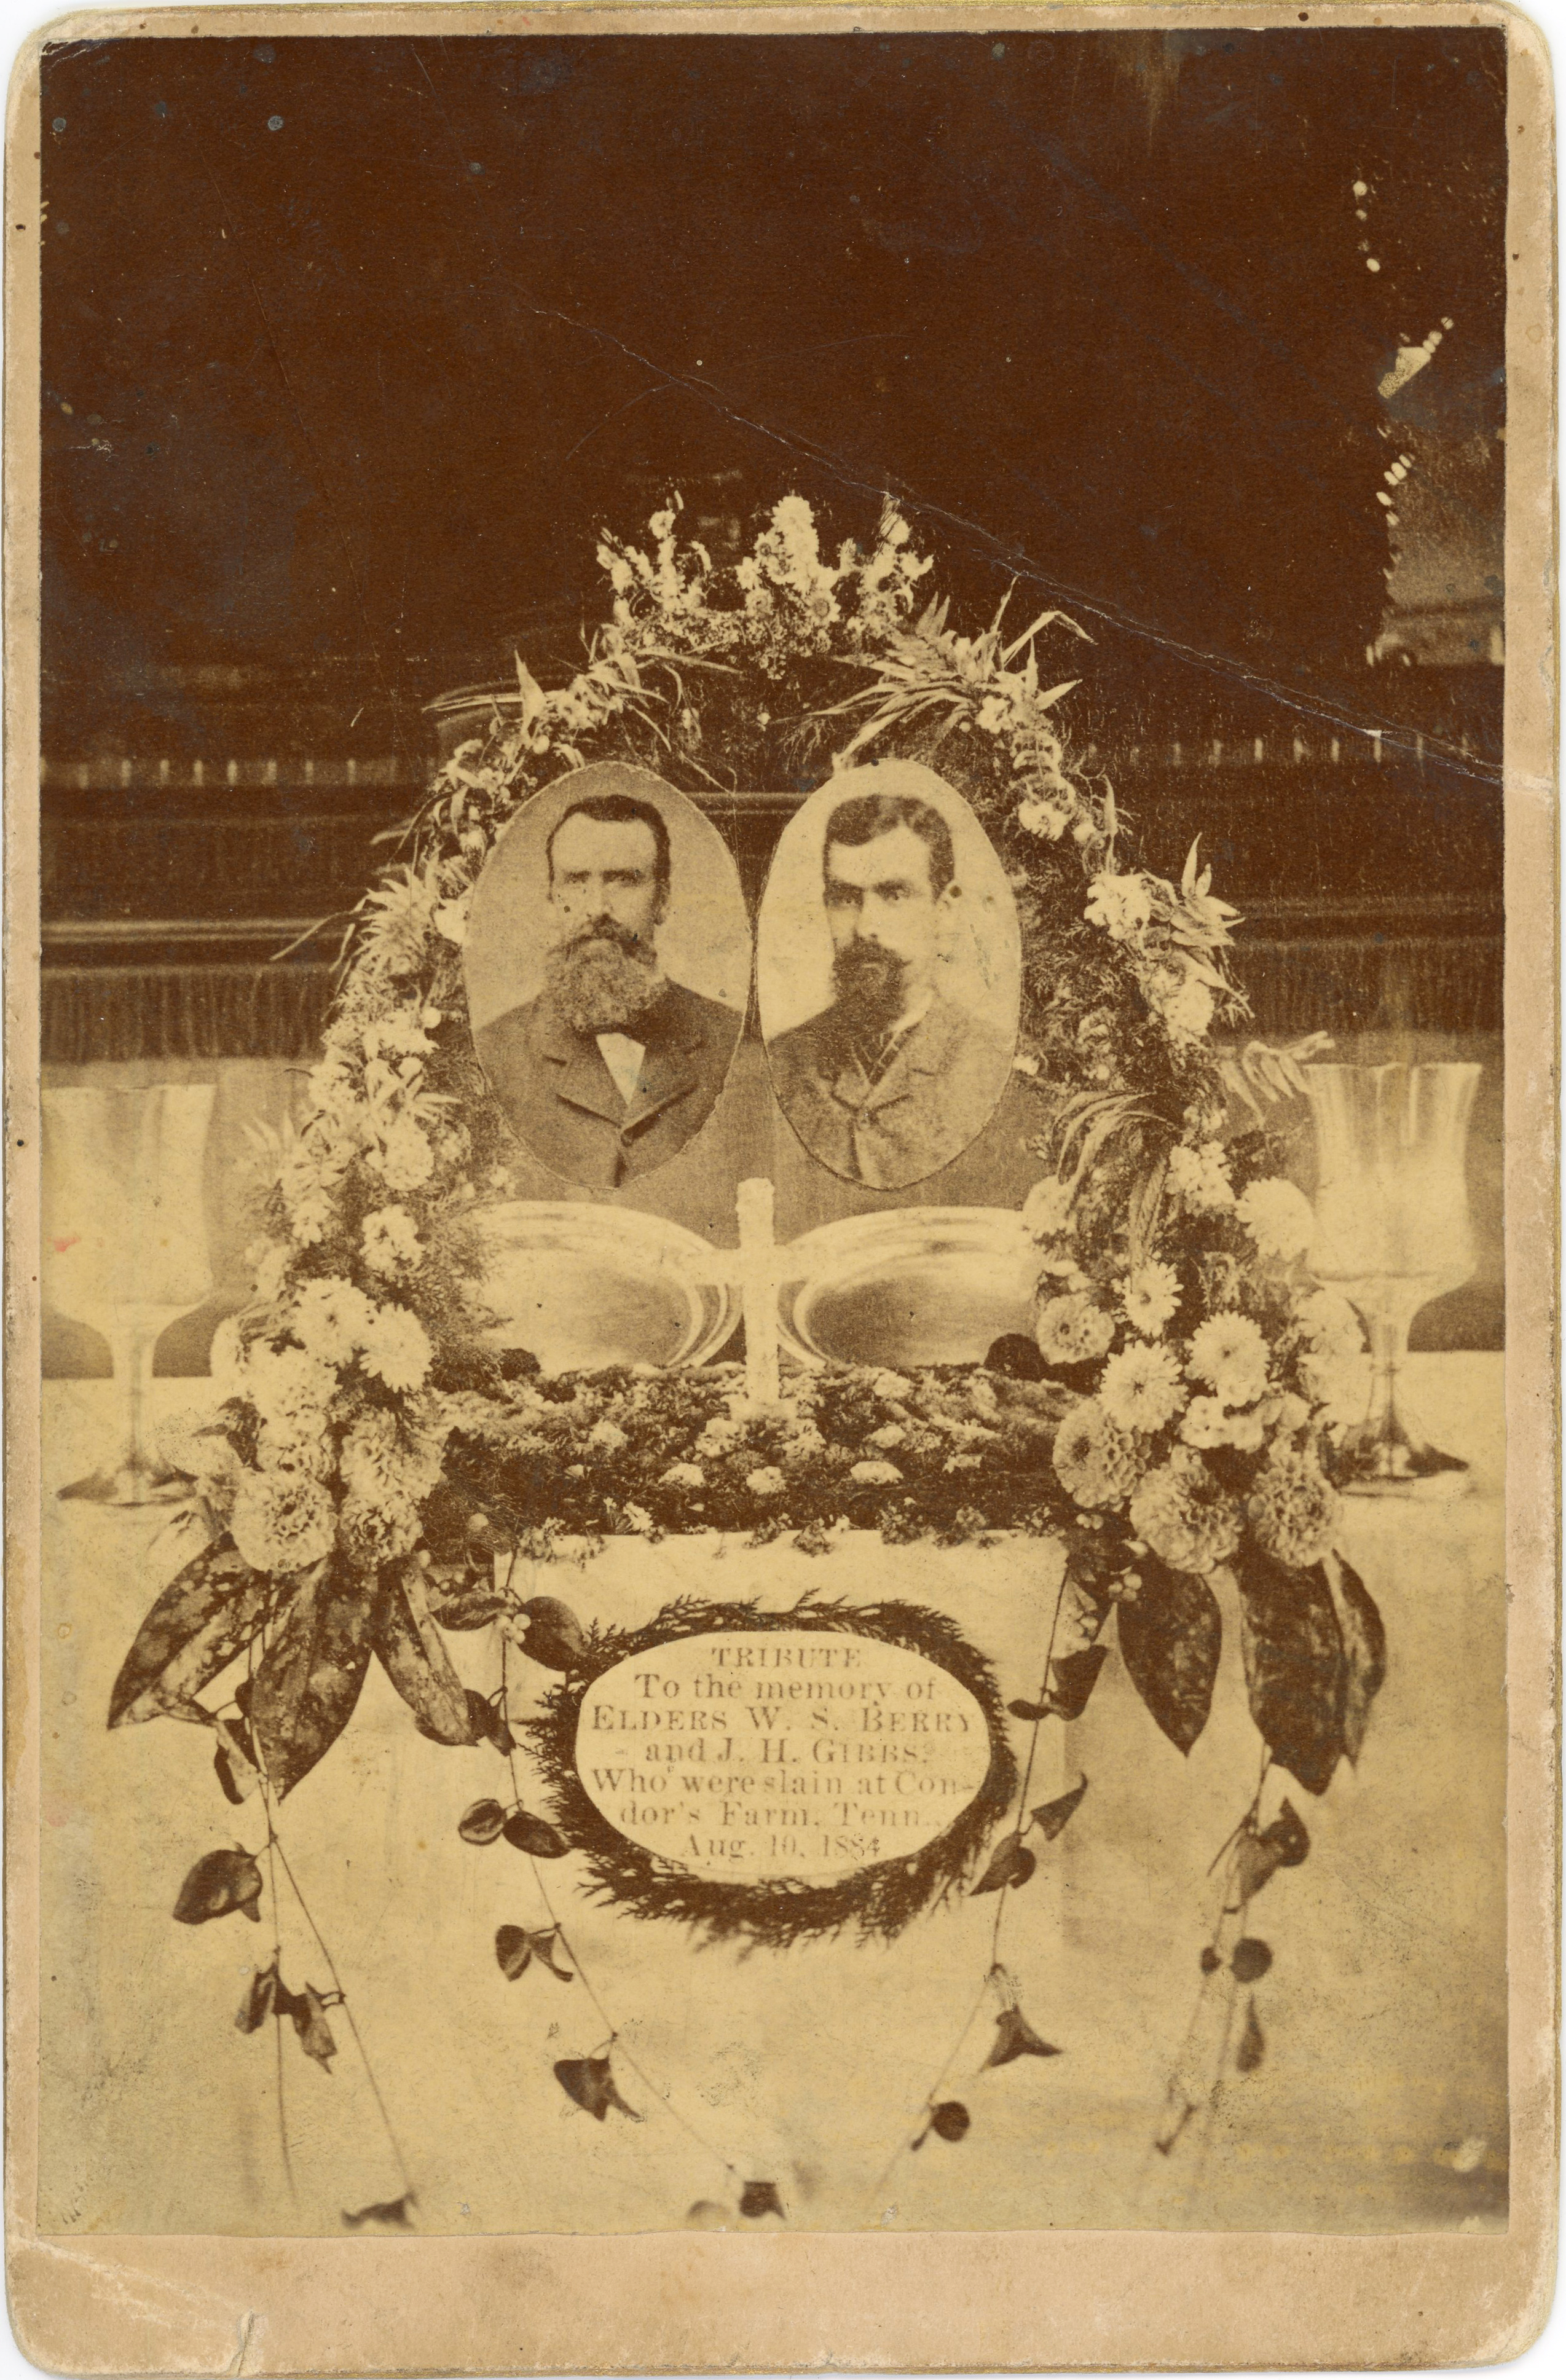 Tribute to Elders William Shanks Berry and John Henry Gibbs, Circa 1884